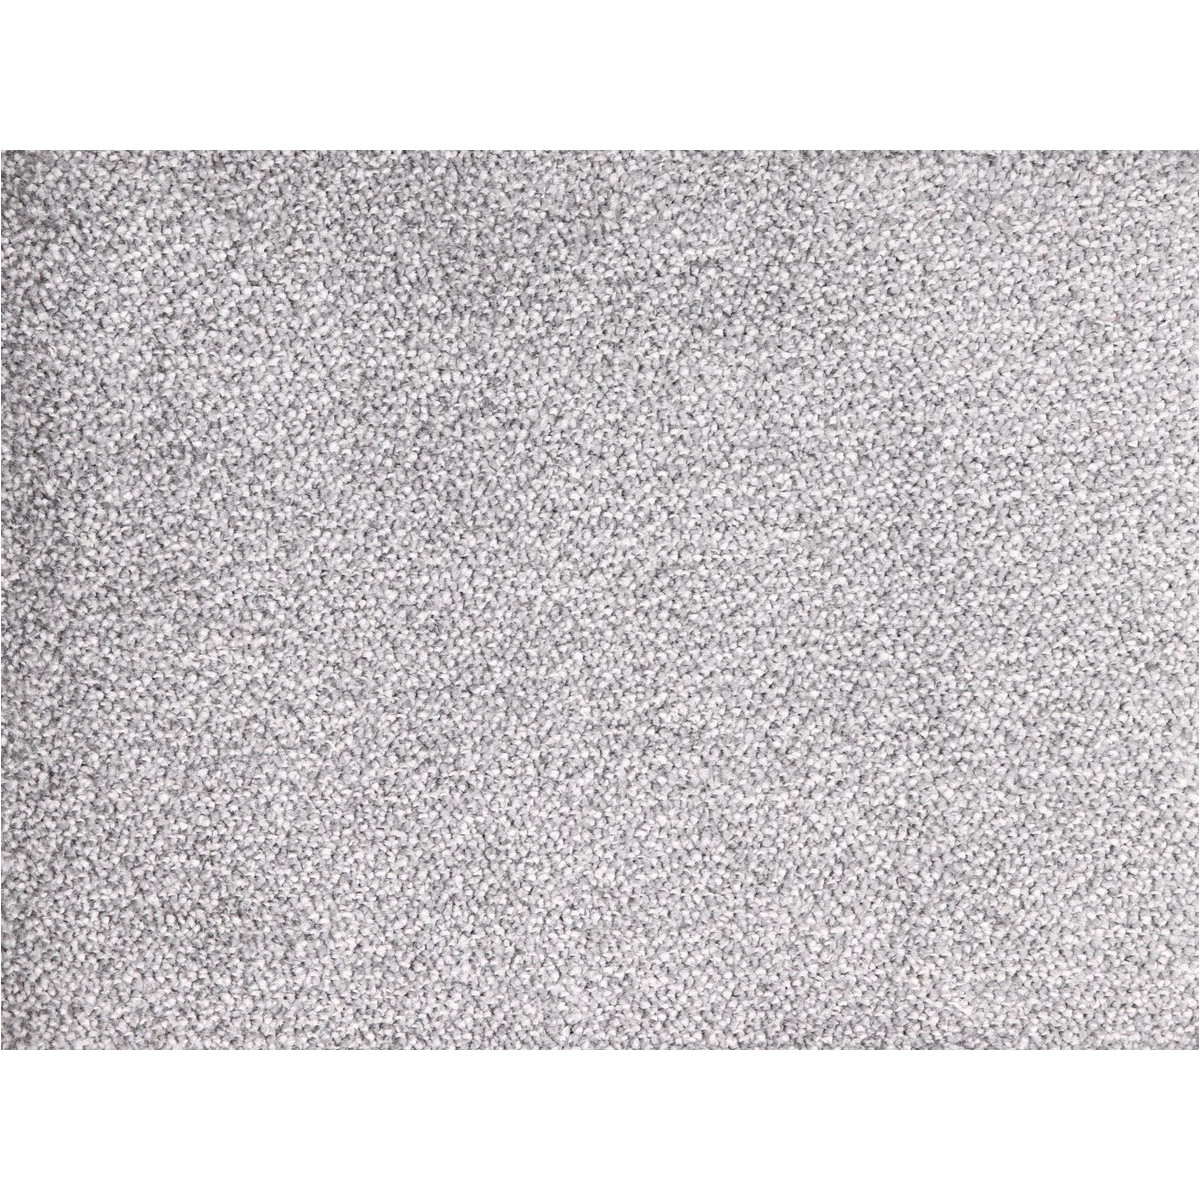 AKCE: 75x470 cm Metrážový koberec Tagil / 33631 šedý